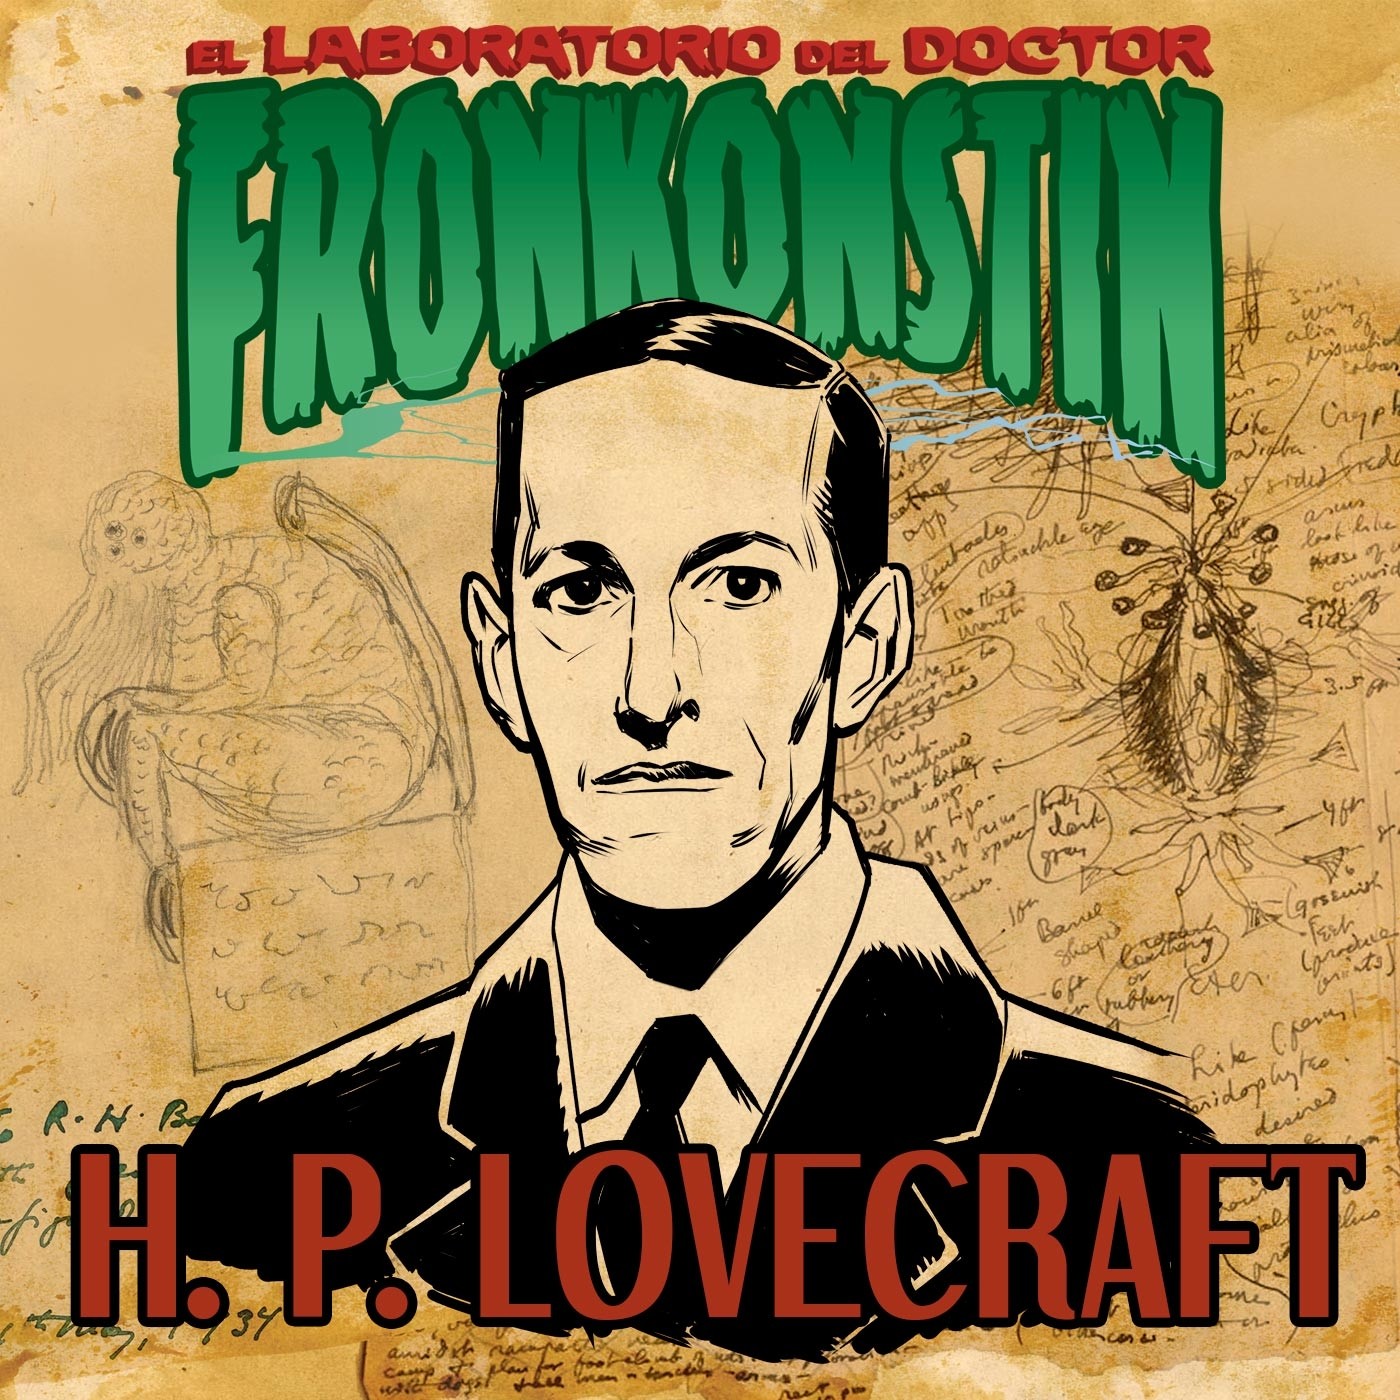 3X01 H. P. Lovecraft. Biografía.